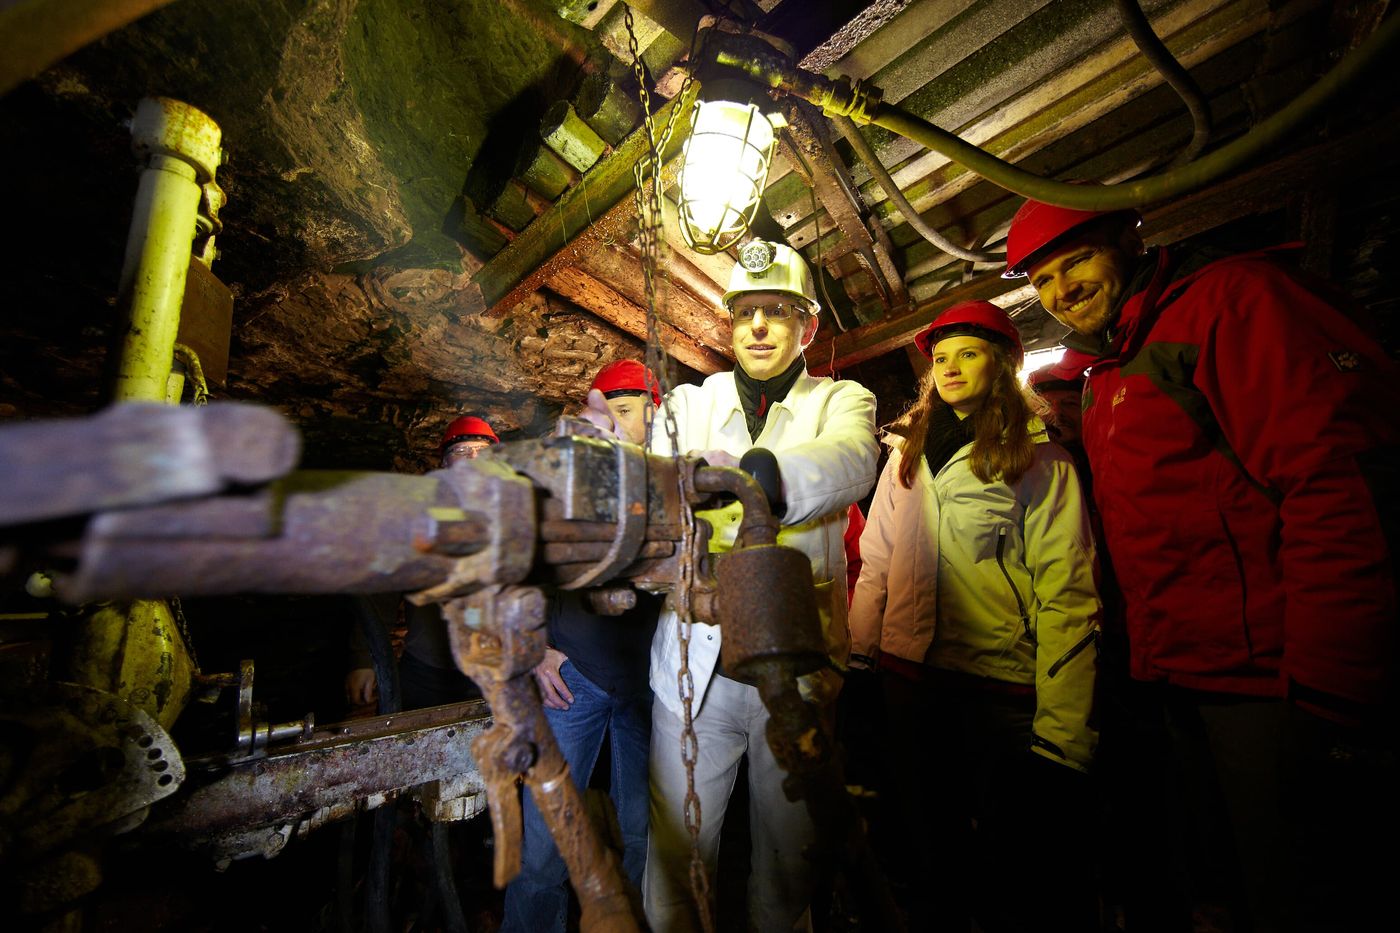 Tief in die Bergwerksgeschichte eintauchen